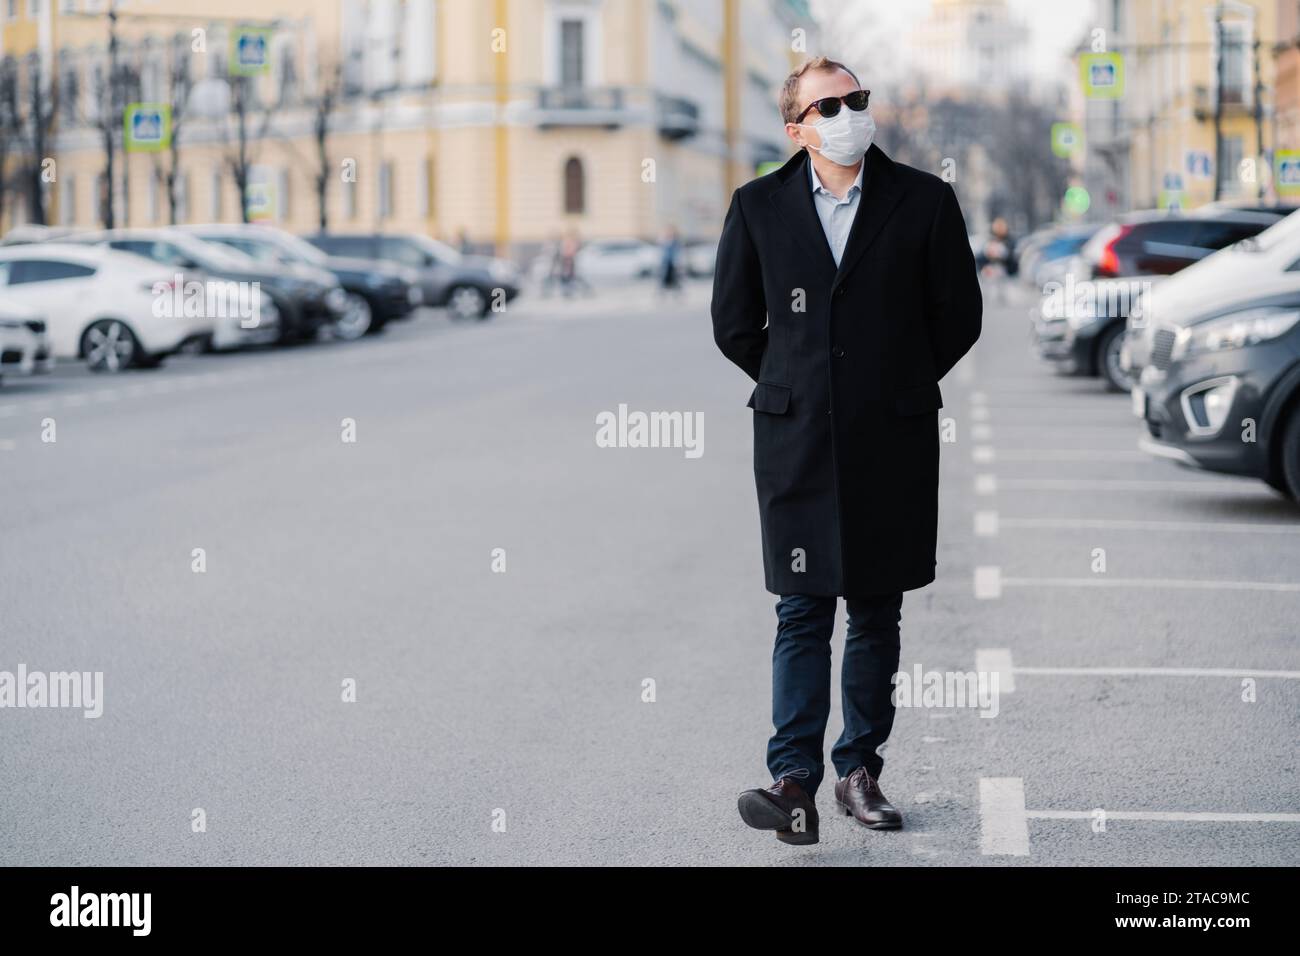 Homme marchant dans la ville portant un long manteau et un masque facial, pratiquant la sécurité sanitaire Banque D'Images